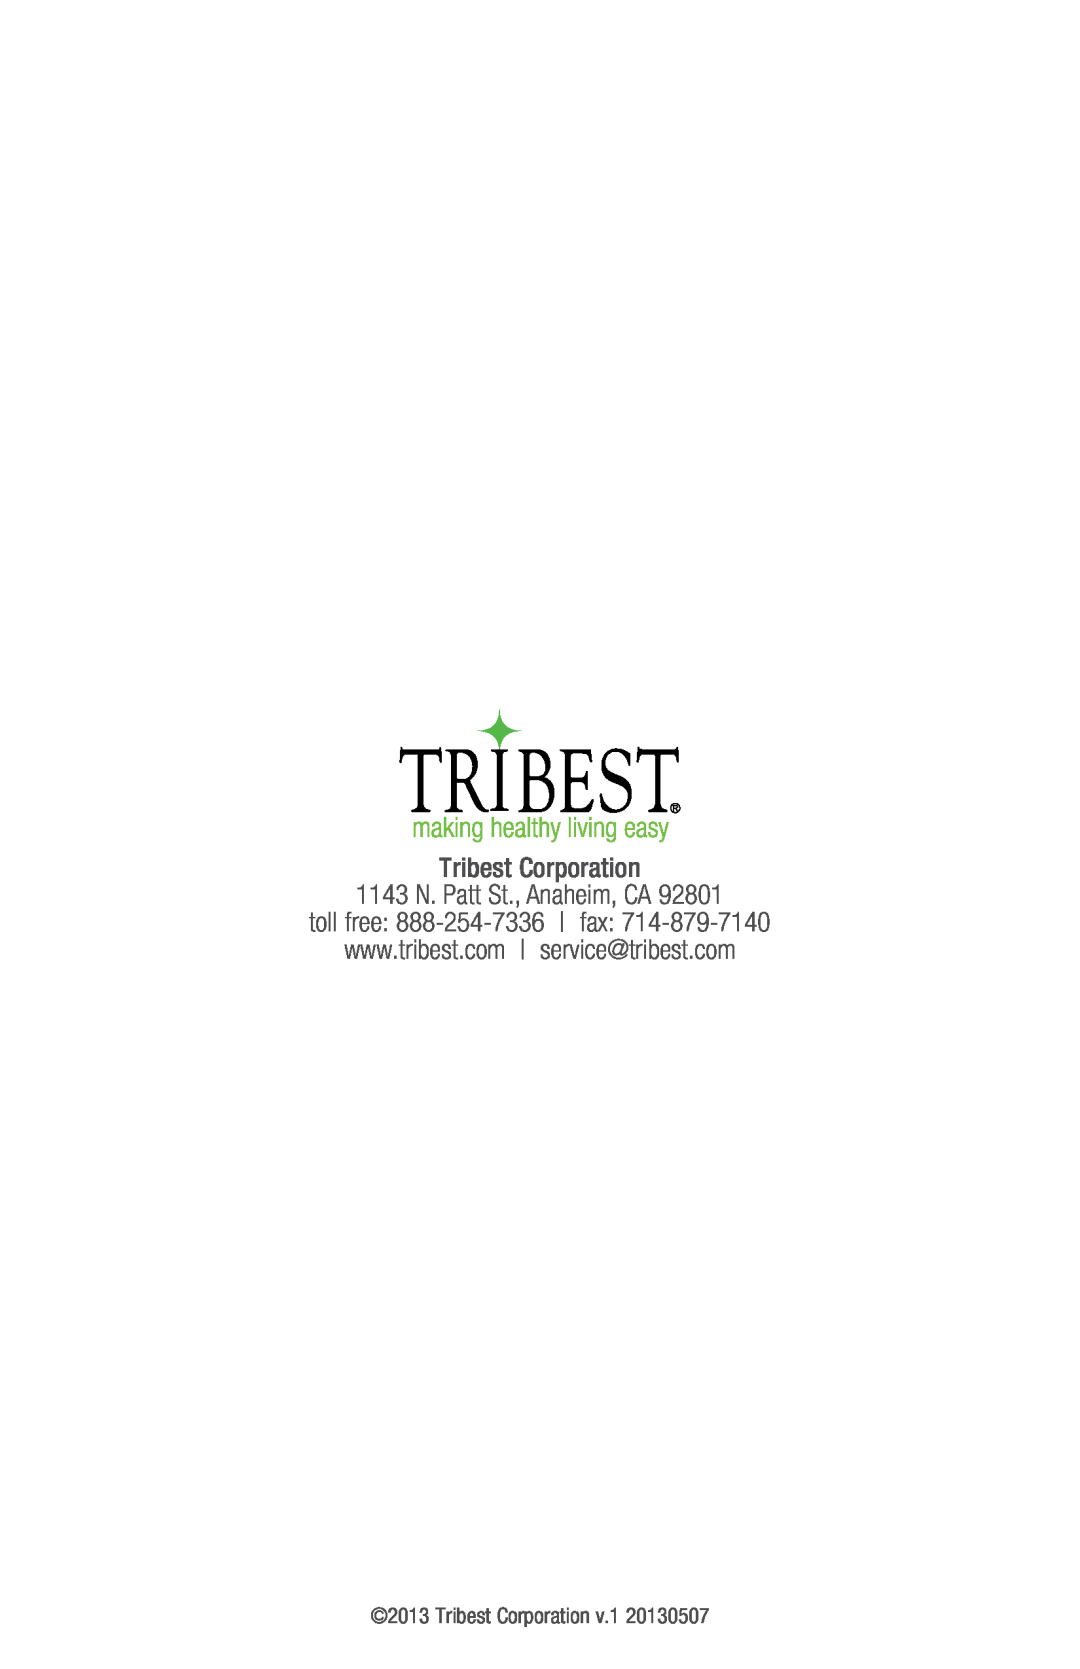 Tribest SD-P9000GP operation manual Tribest Corporation 1143 N. Patt St., Anaheim, CA, toll free 888-254-7336 fax 